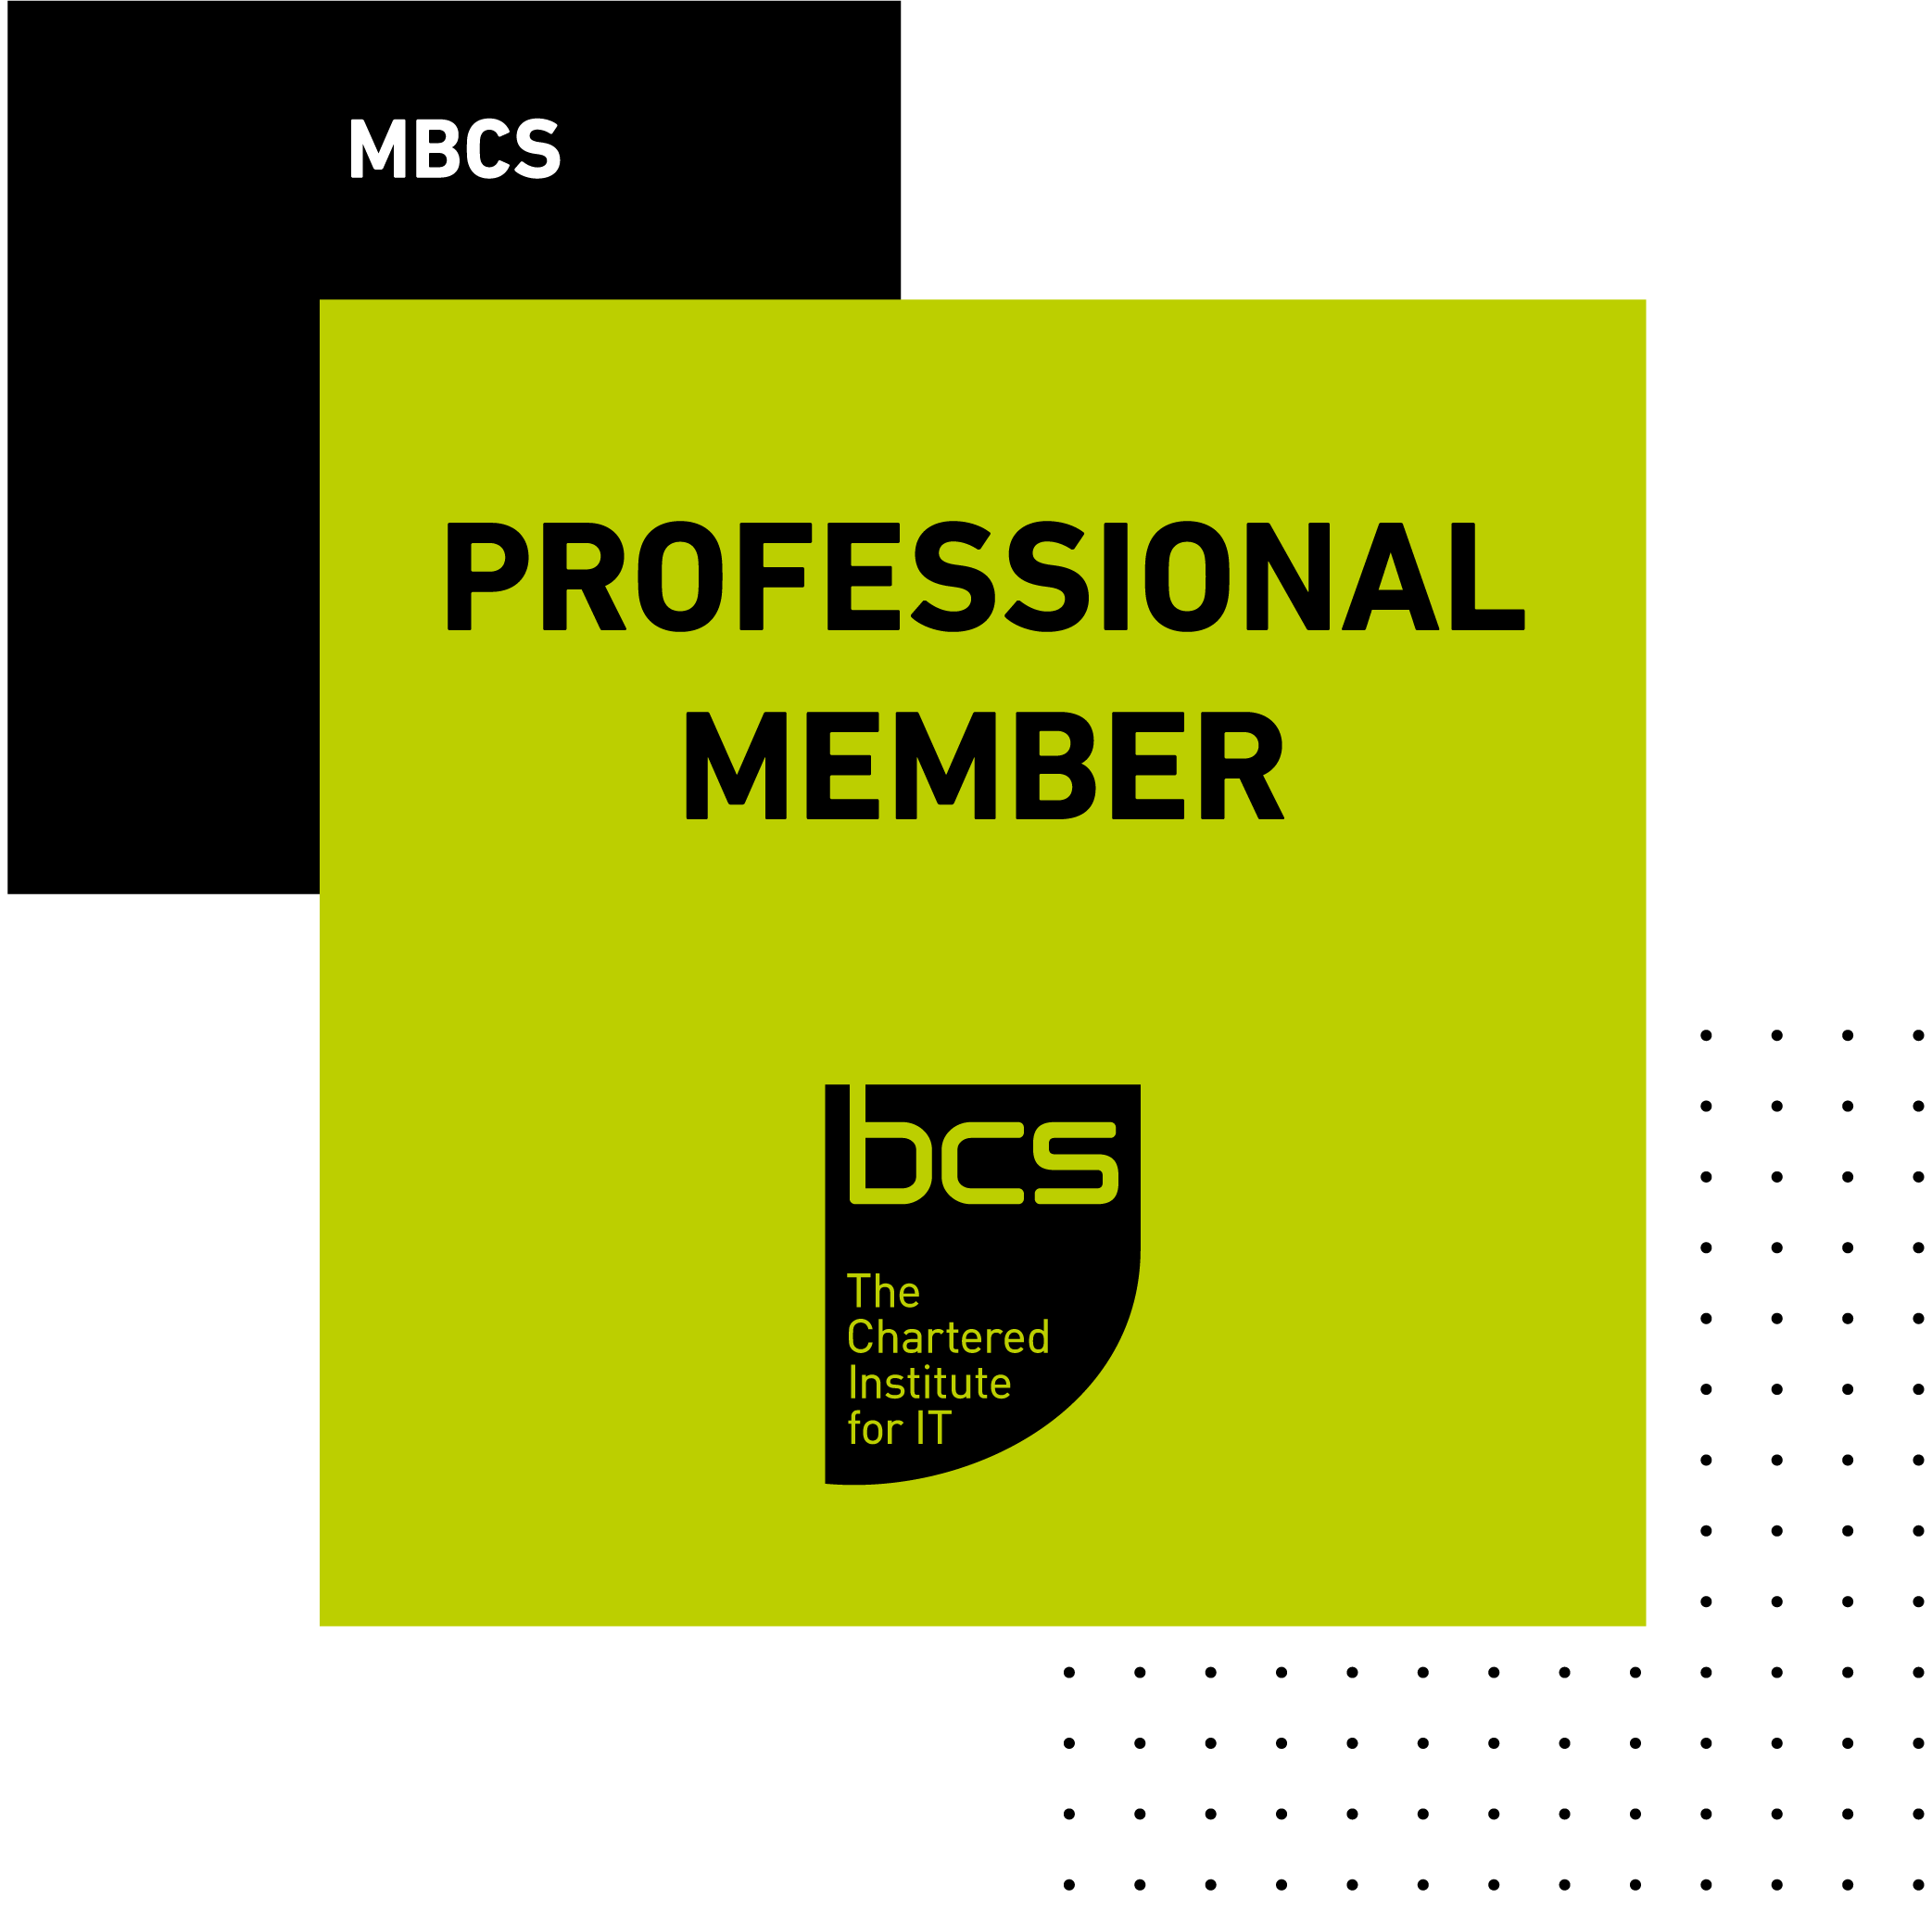 BCS Professional Member - MBCS